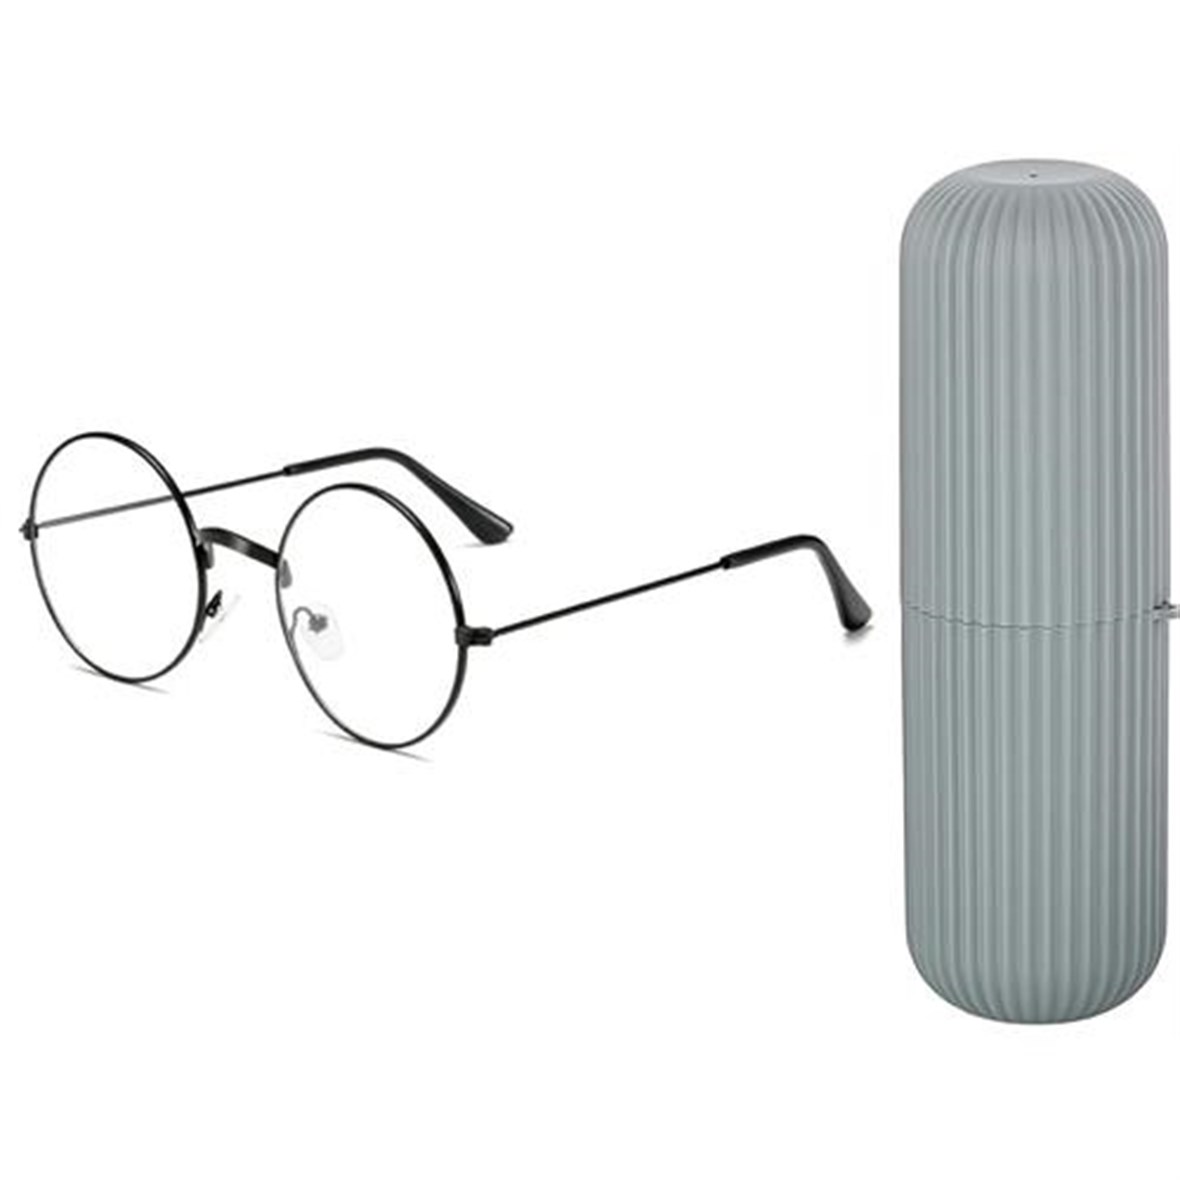 KaktüsKedi Numaralı Gözlük İçin Yuvarlak Çerçeve Gözlük Kutusu Seti 713555